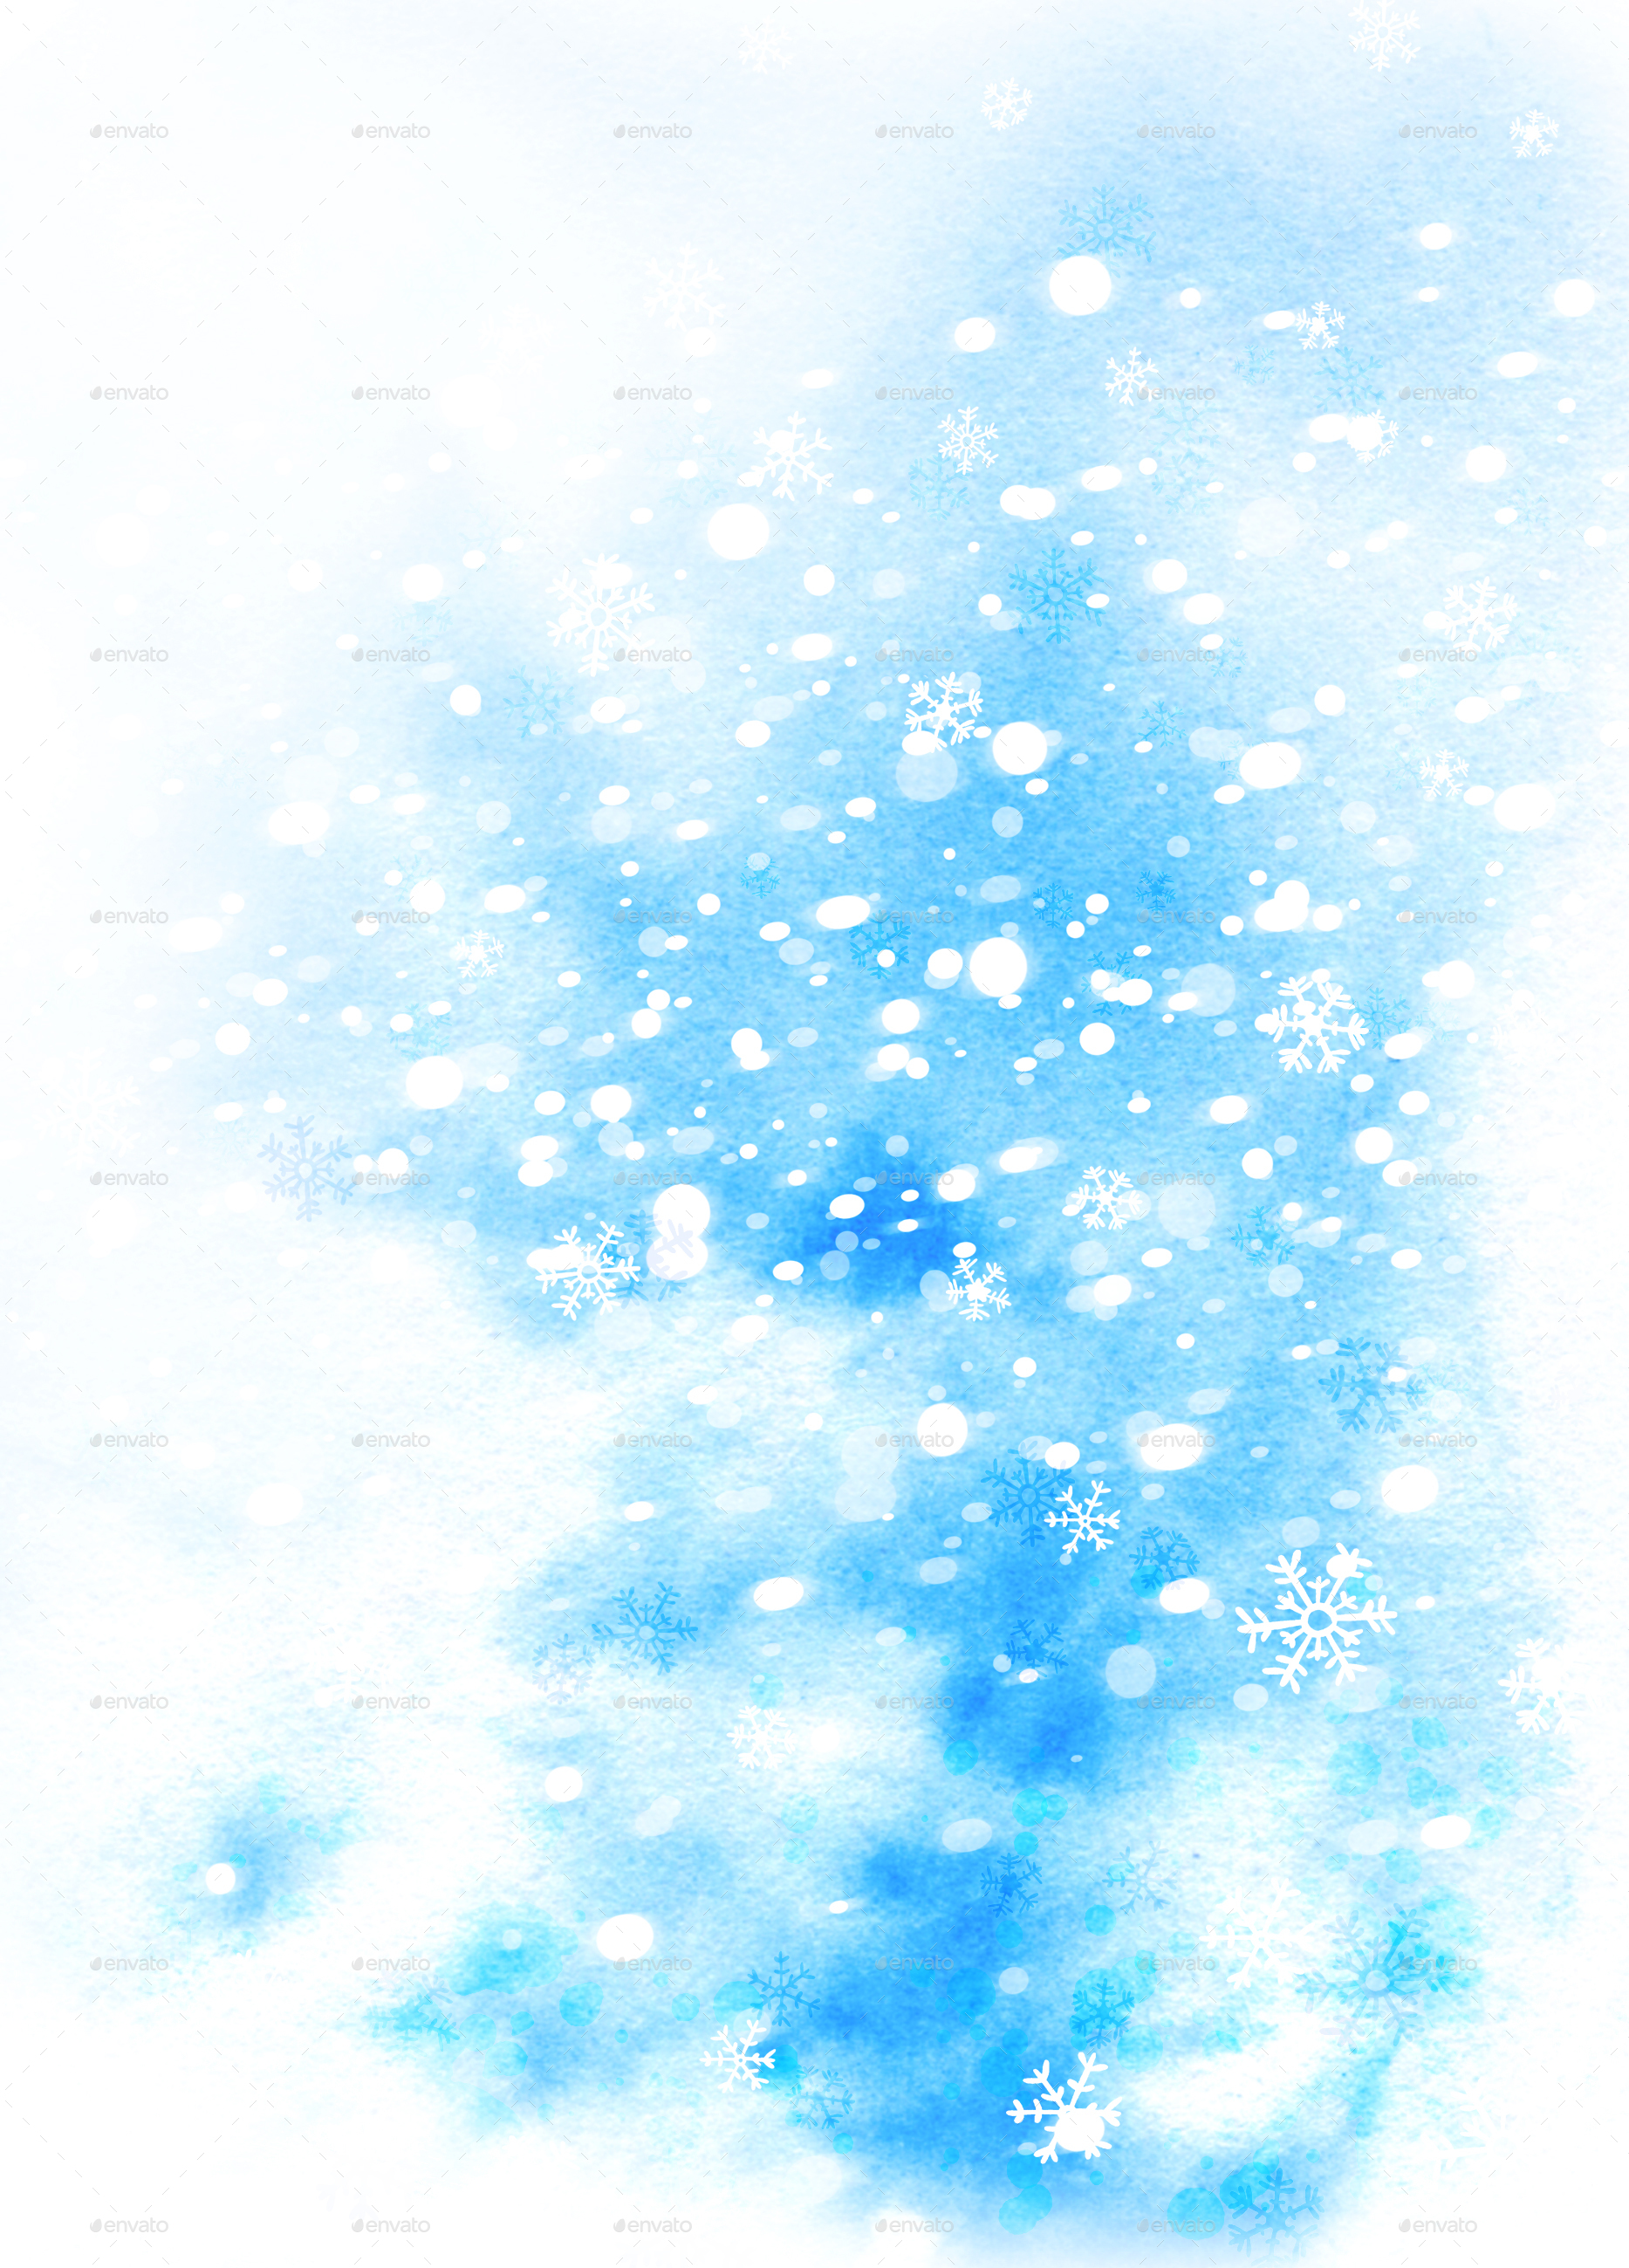 Download 8200 Koleksi Background Blue Winter Paling Keren